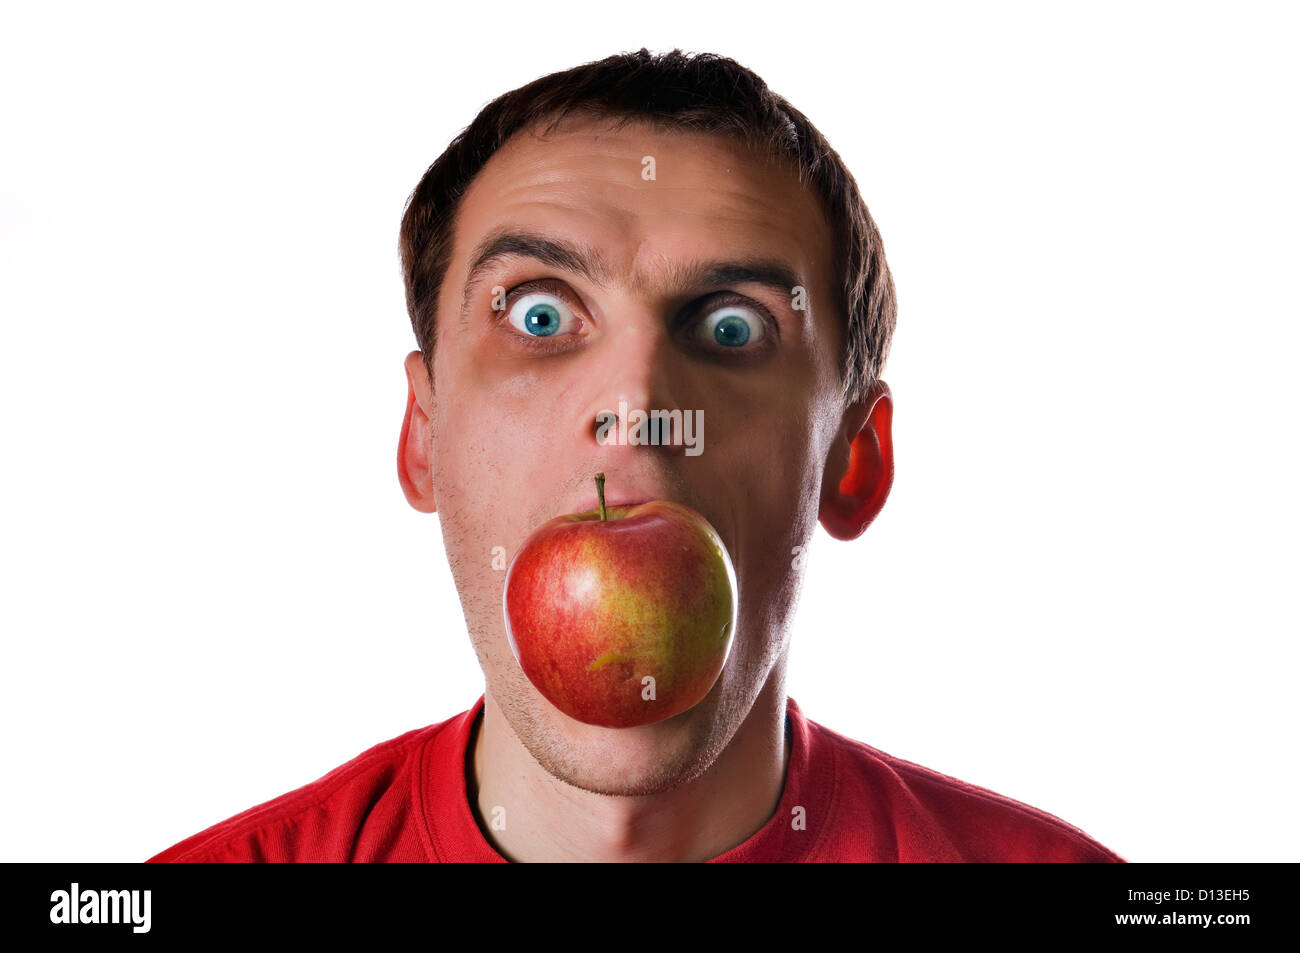 Кинуть яблоко. Мужчина с яблоком во рту. Толстый чел с яблоком во рту.